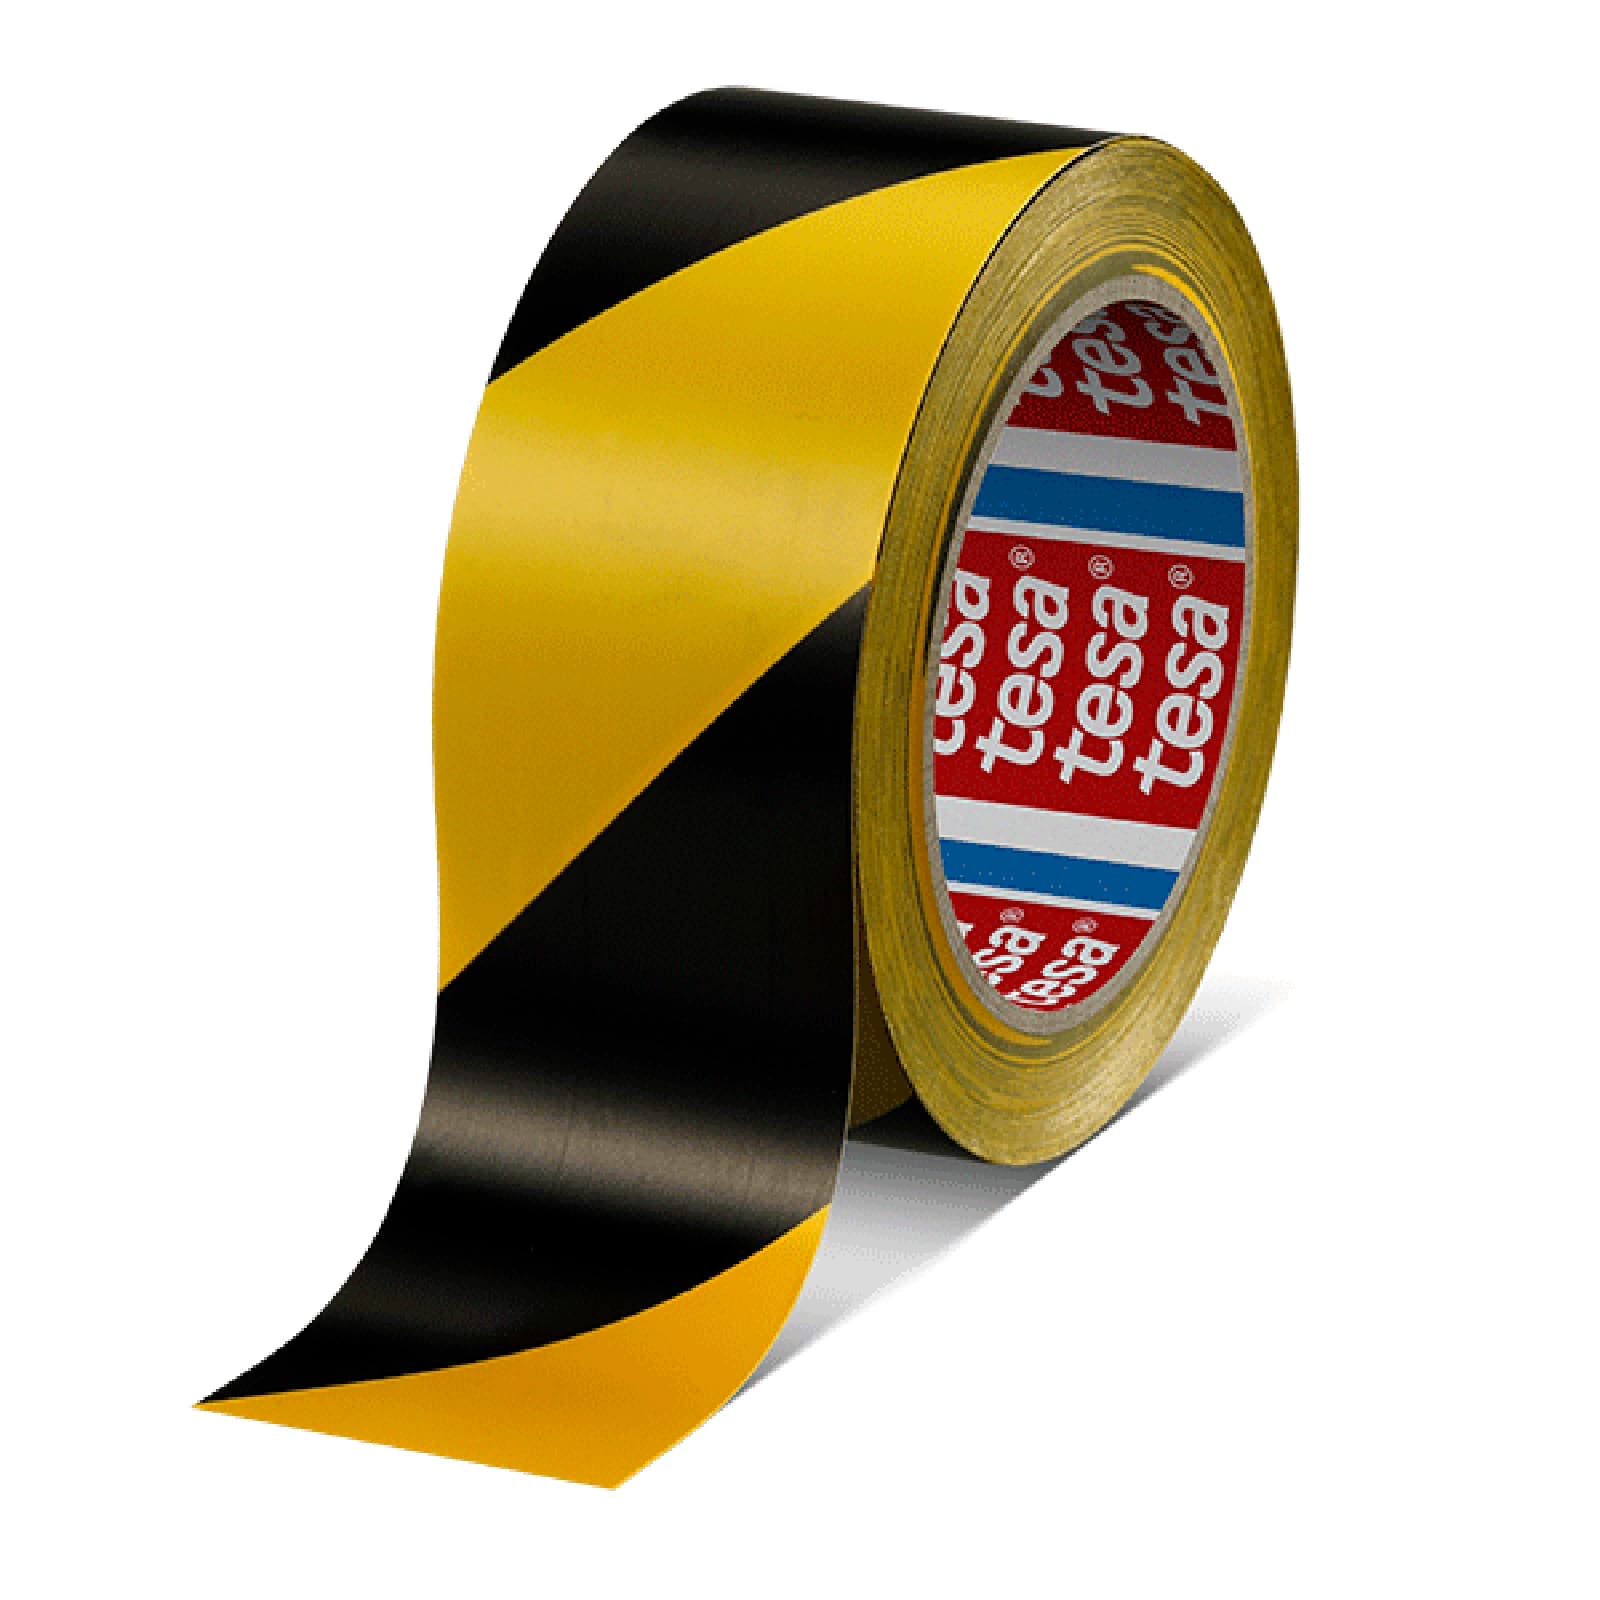 nastro adesivo in PVC nero e giallo per segnaletica stradale 2 nastri di sicurezza per segnalazione di pericolo nastro adesivo per segnaletica di segnalazione impermeabile 48 mm x 20 m